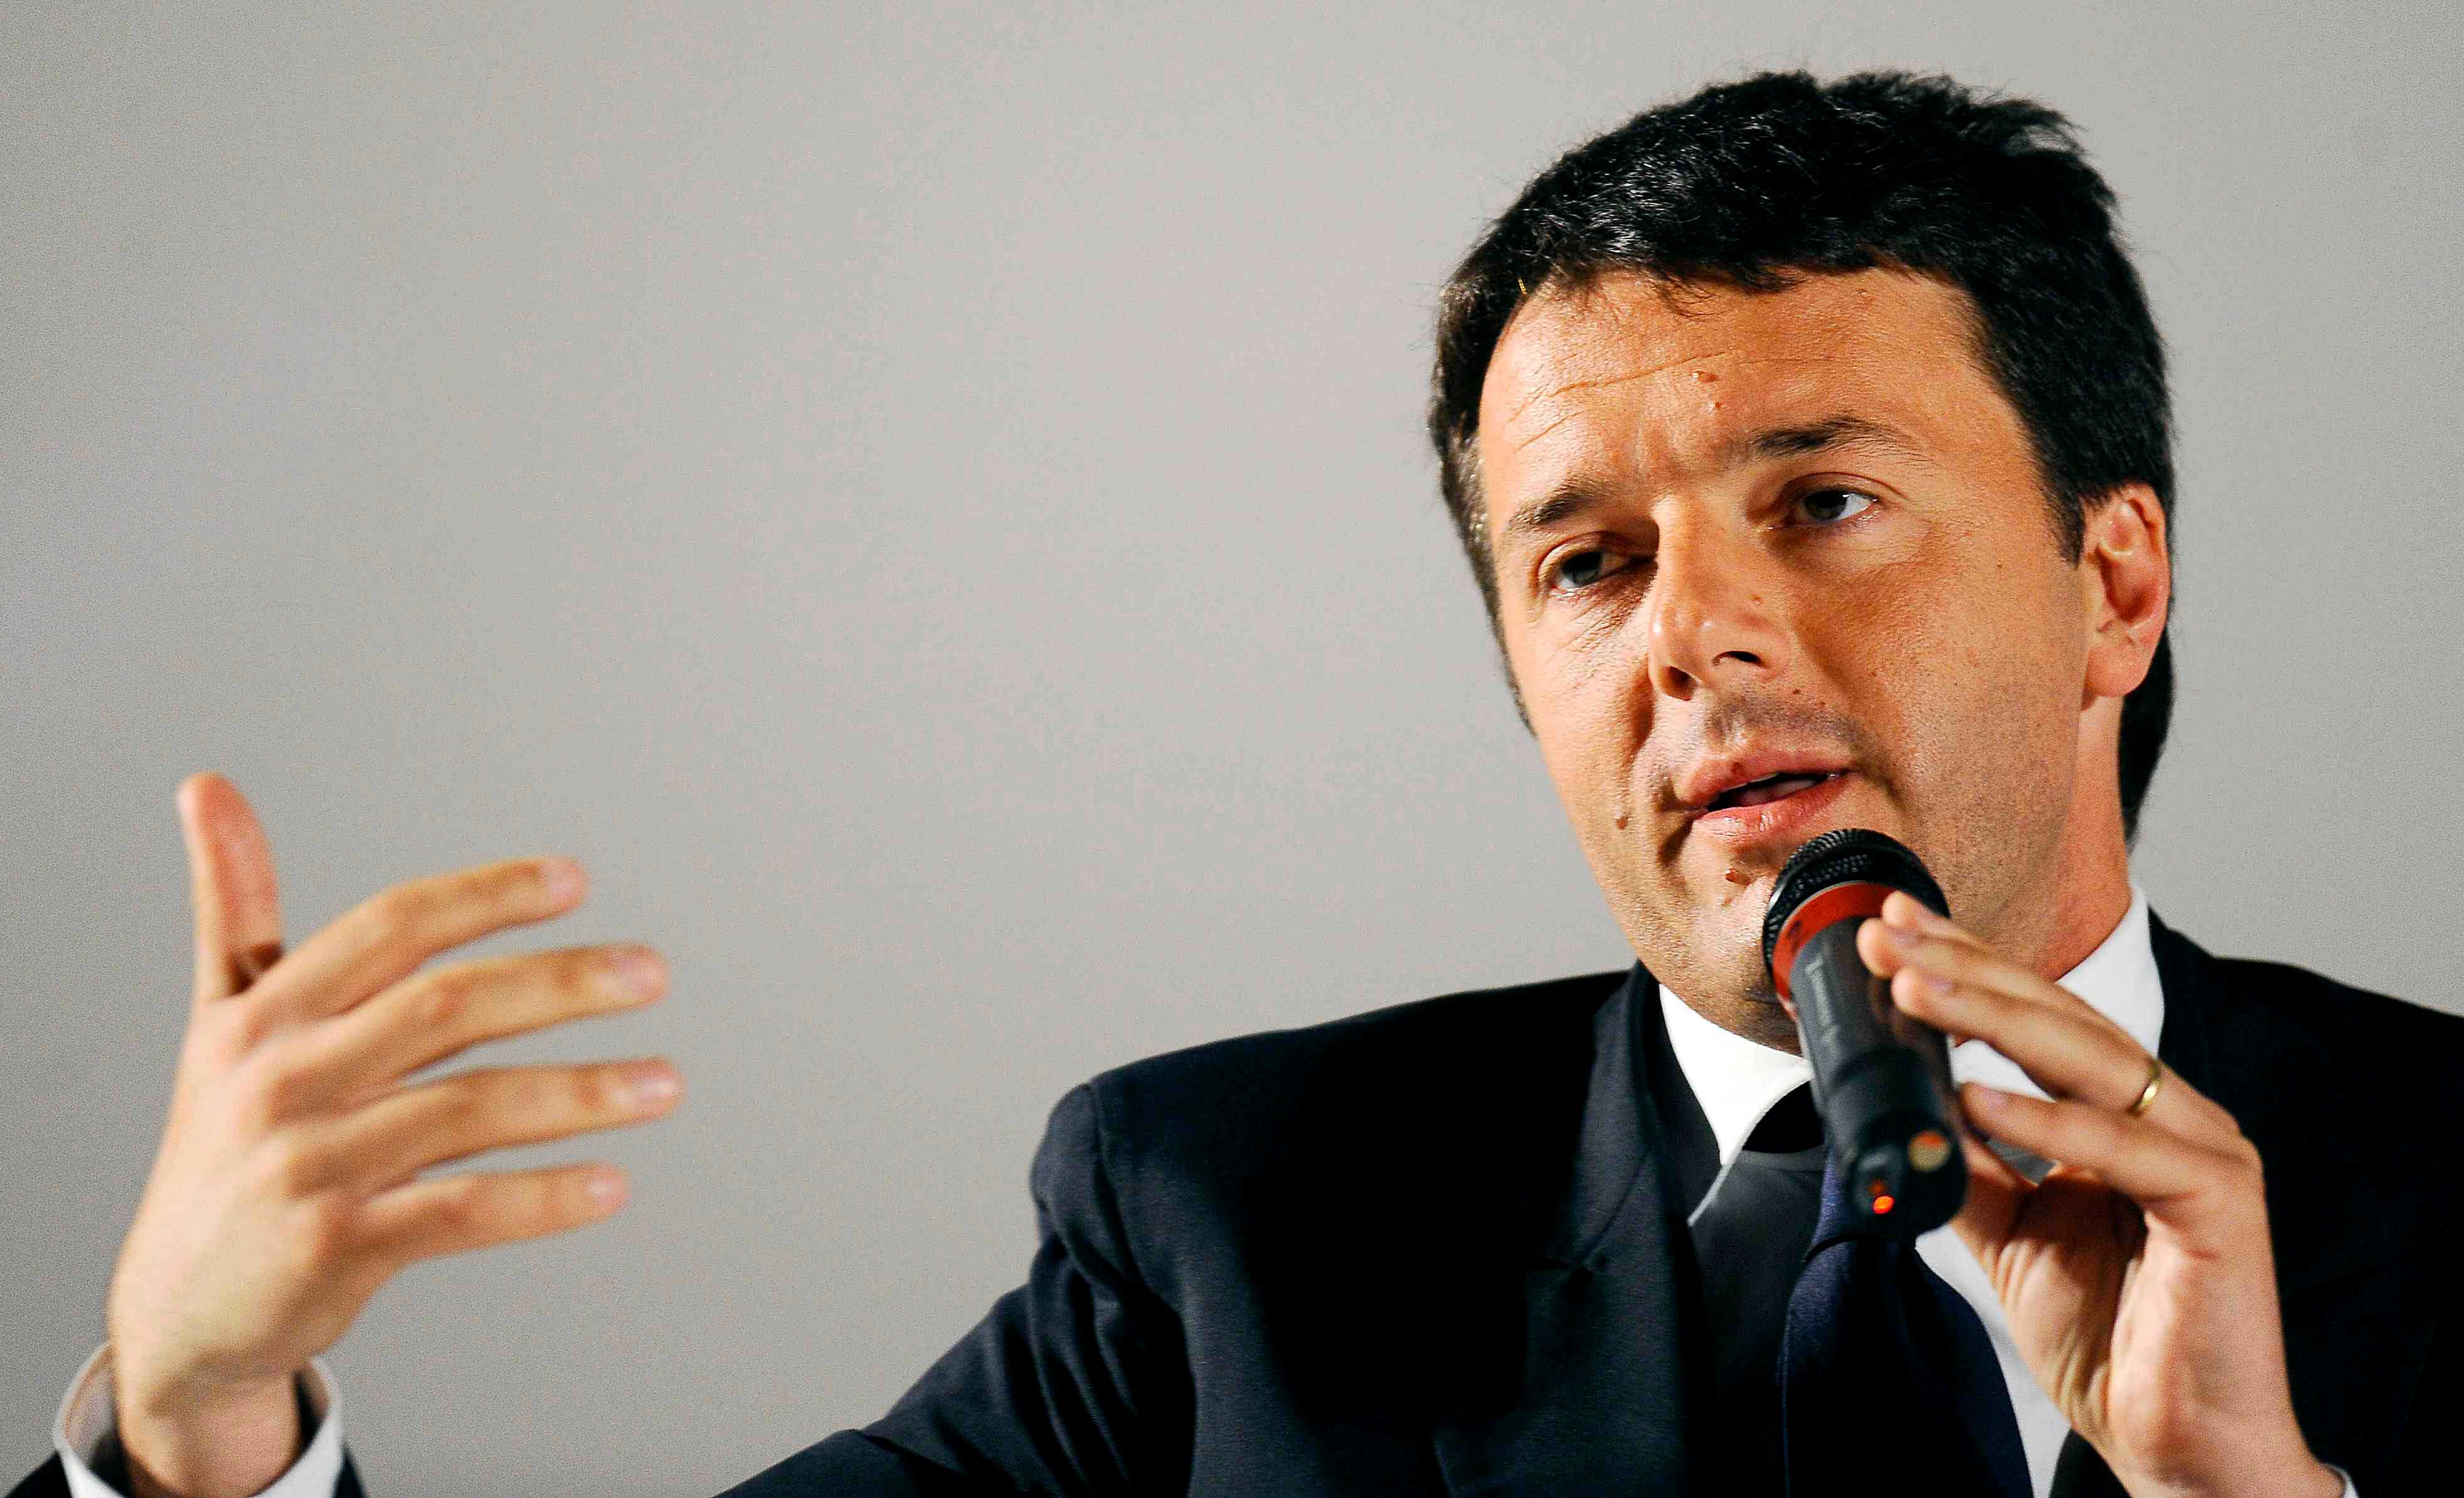 La replica di Matteo Renzi alla Camera: "Non ci sono più alibi"